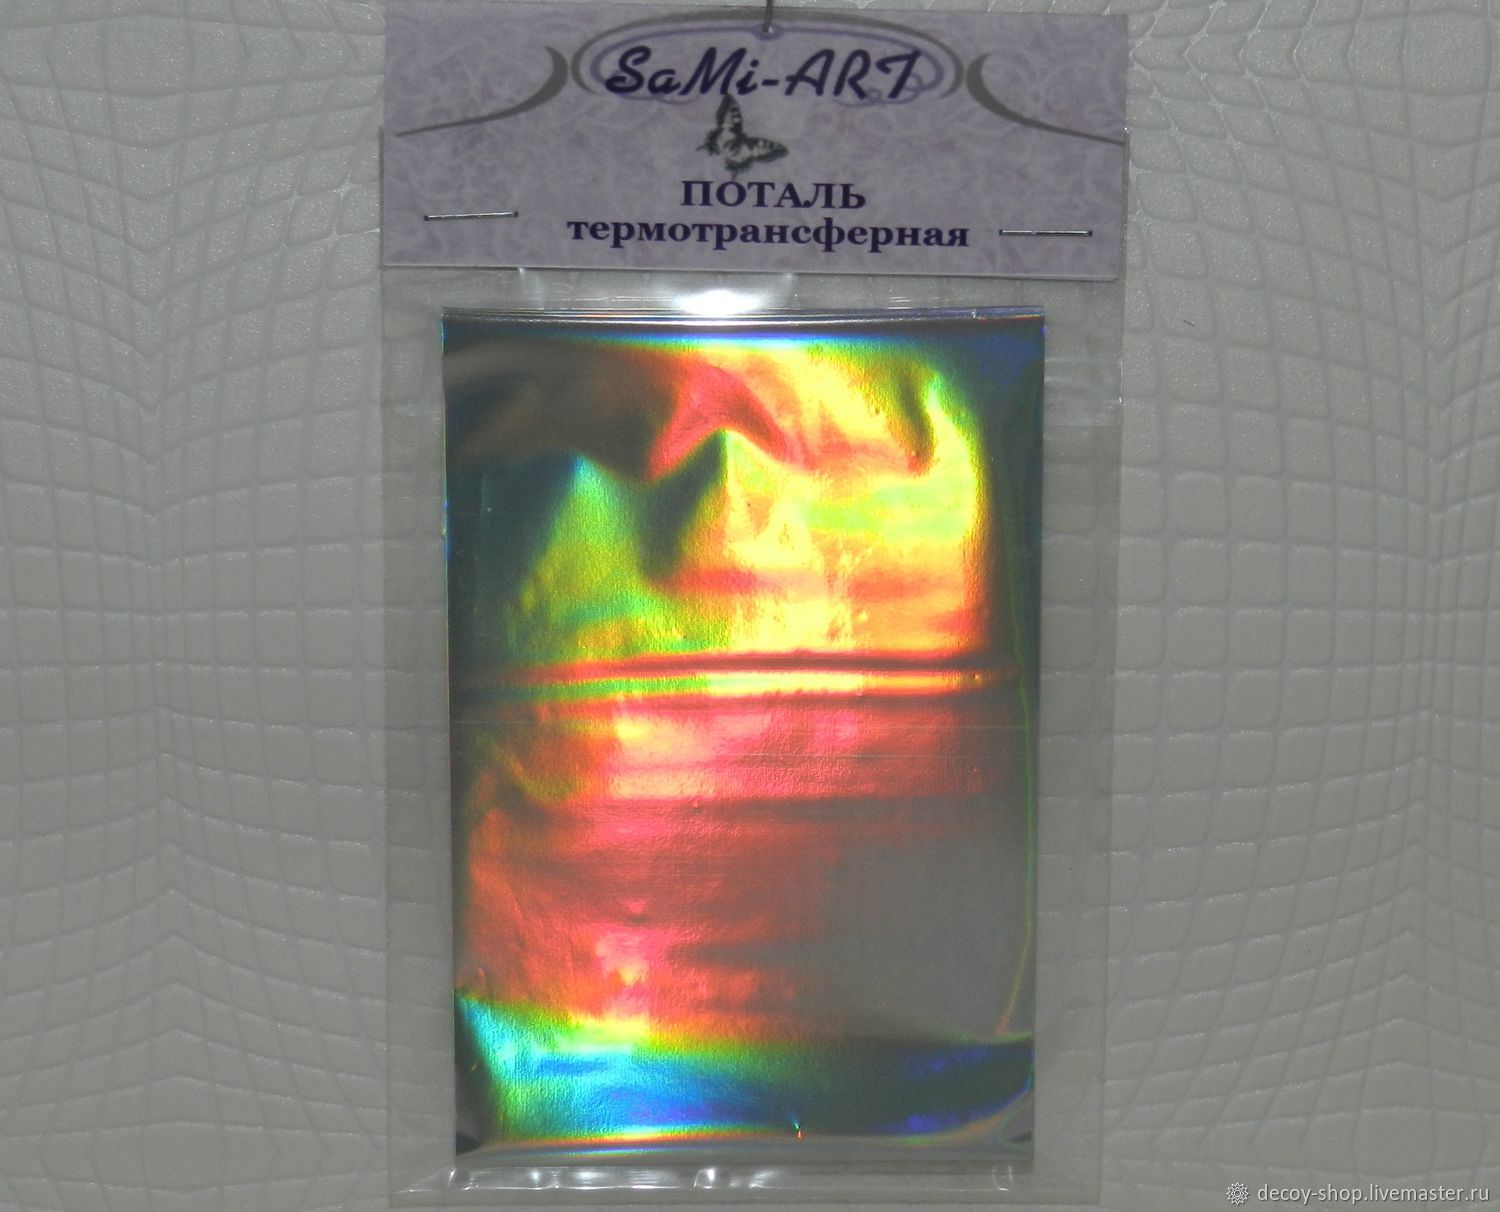 Petal thermal transfer `Silver holographic`, 1 m x 8cm. 60 RUB
